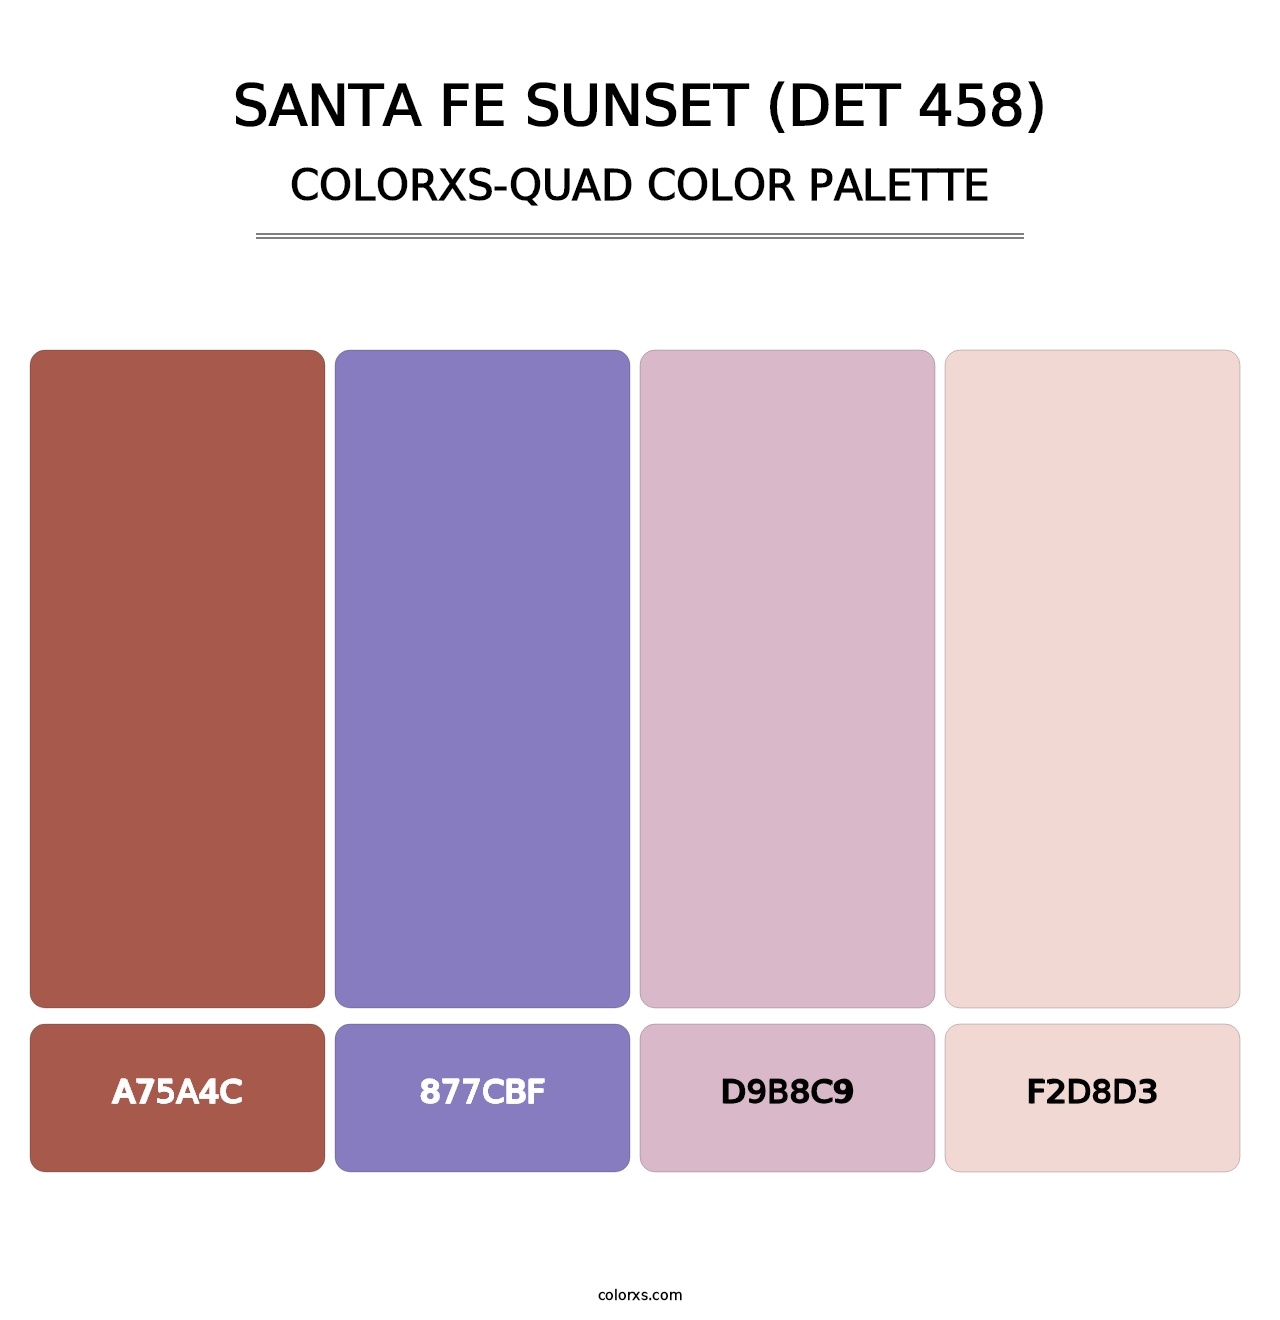 Santa Fe Sunset (DET 458) - Colorxs Quad Palette